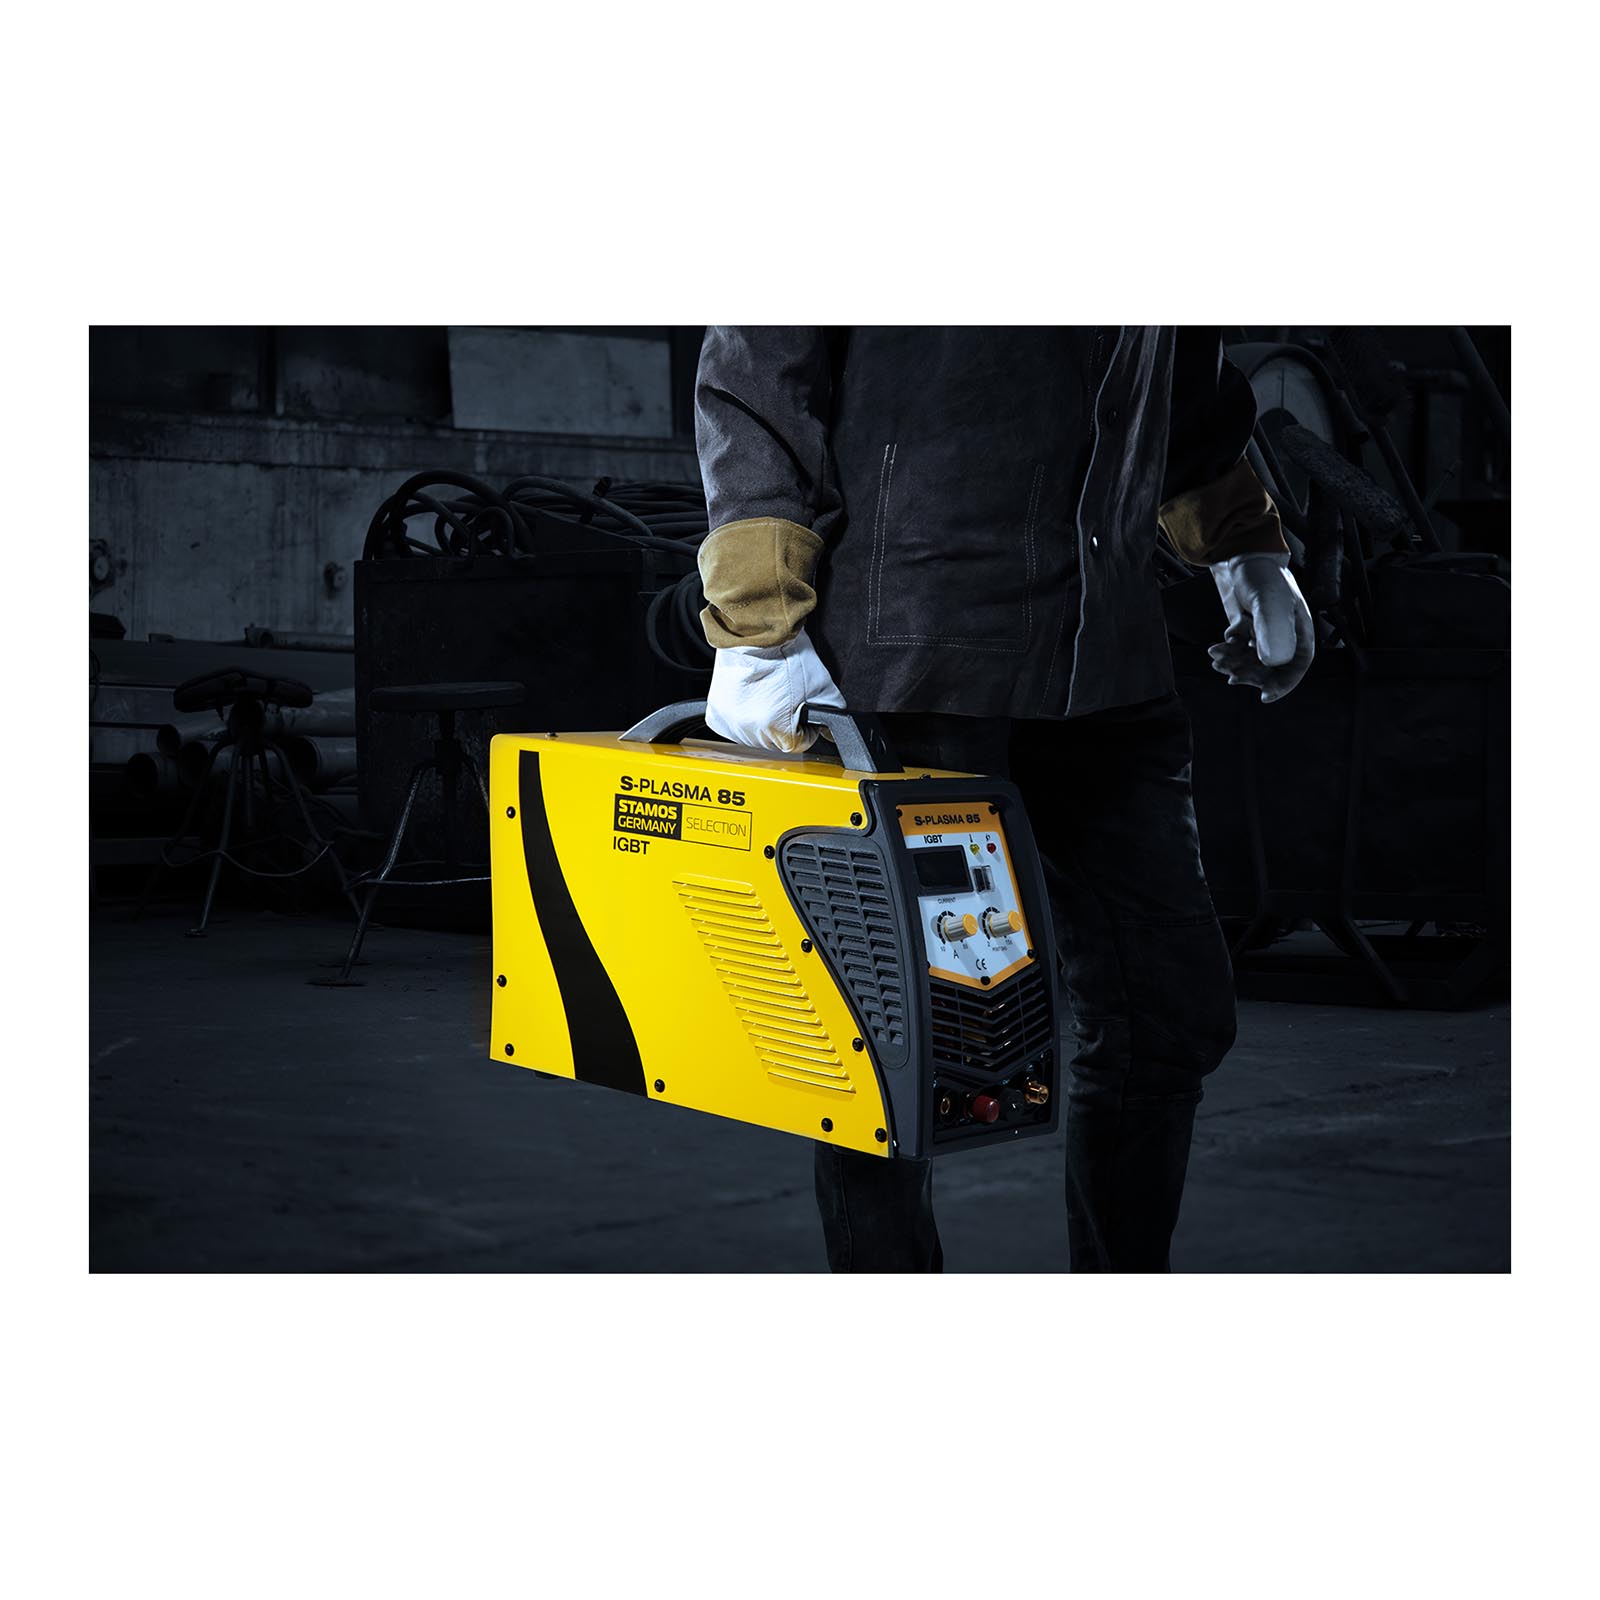 CNC Plasmaskärare - 85 A - 400 V - pilottändning + Svetshjälm – Pokerface – PROFESSIONAL SERIES